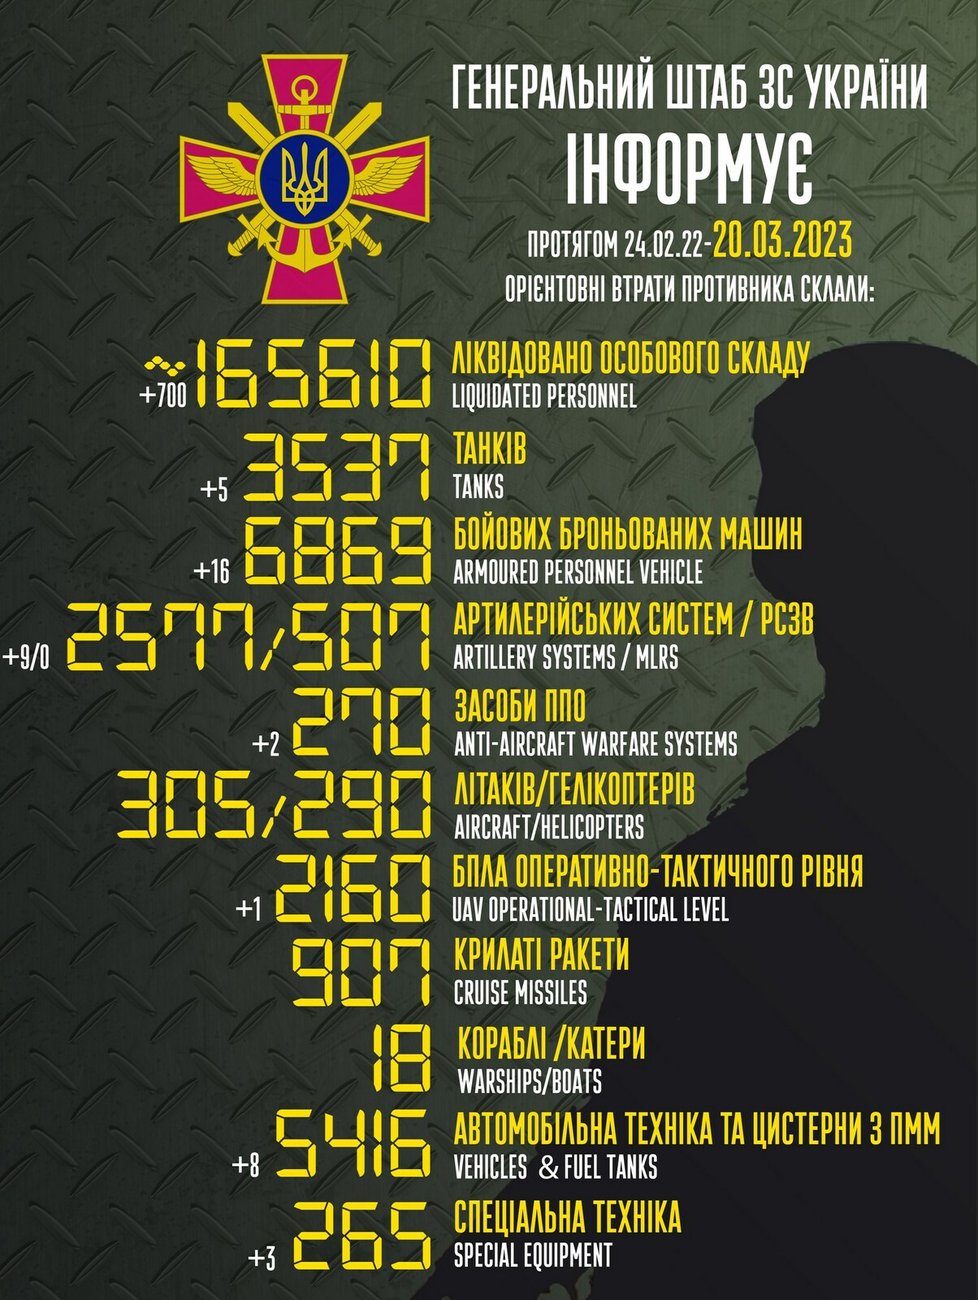 Ruské ztráty k 20. březnu podle ukrajinské armády.